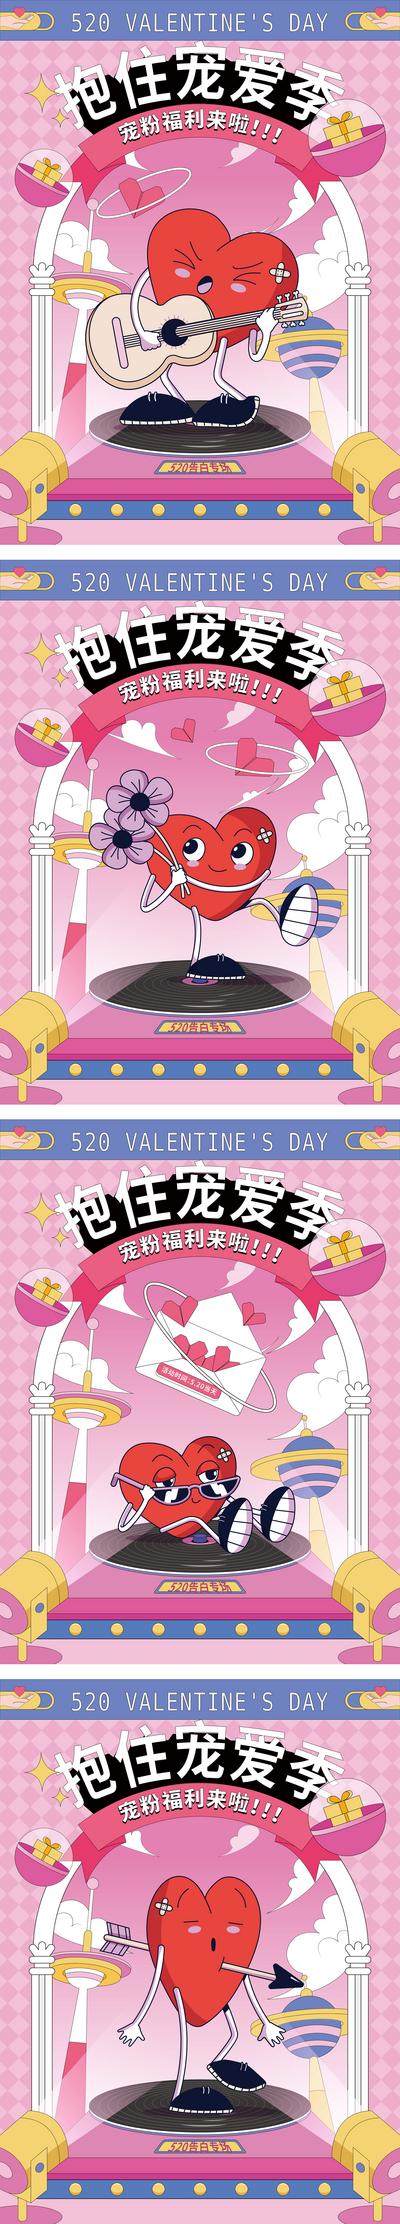 【南门网】海报 公历节日 520 情人节 公历节日  love 宠粉 爱心 趣味 插画 粉色 系列